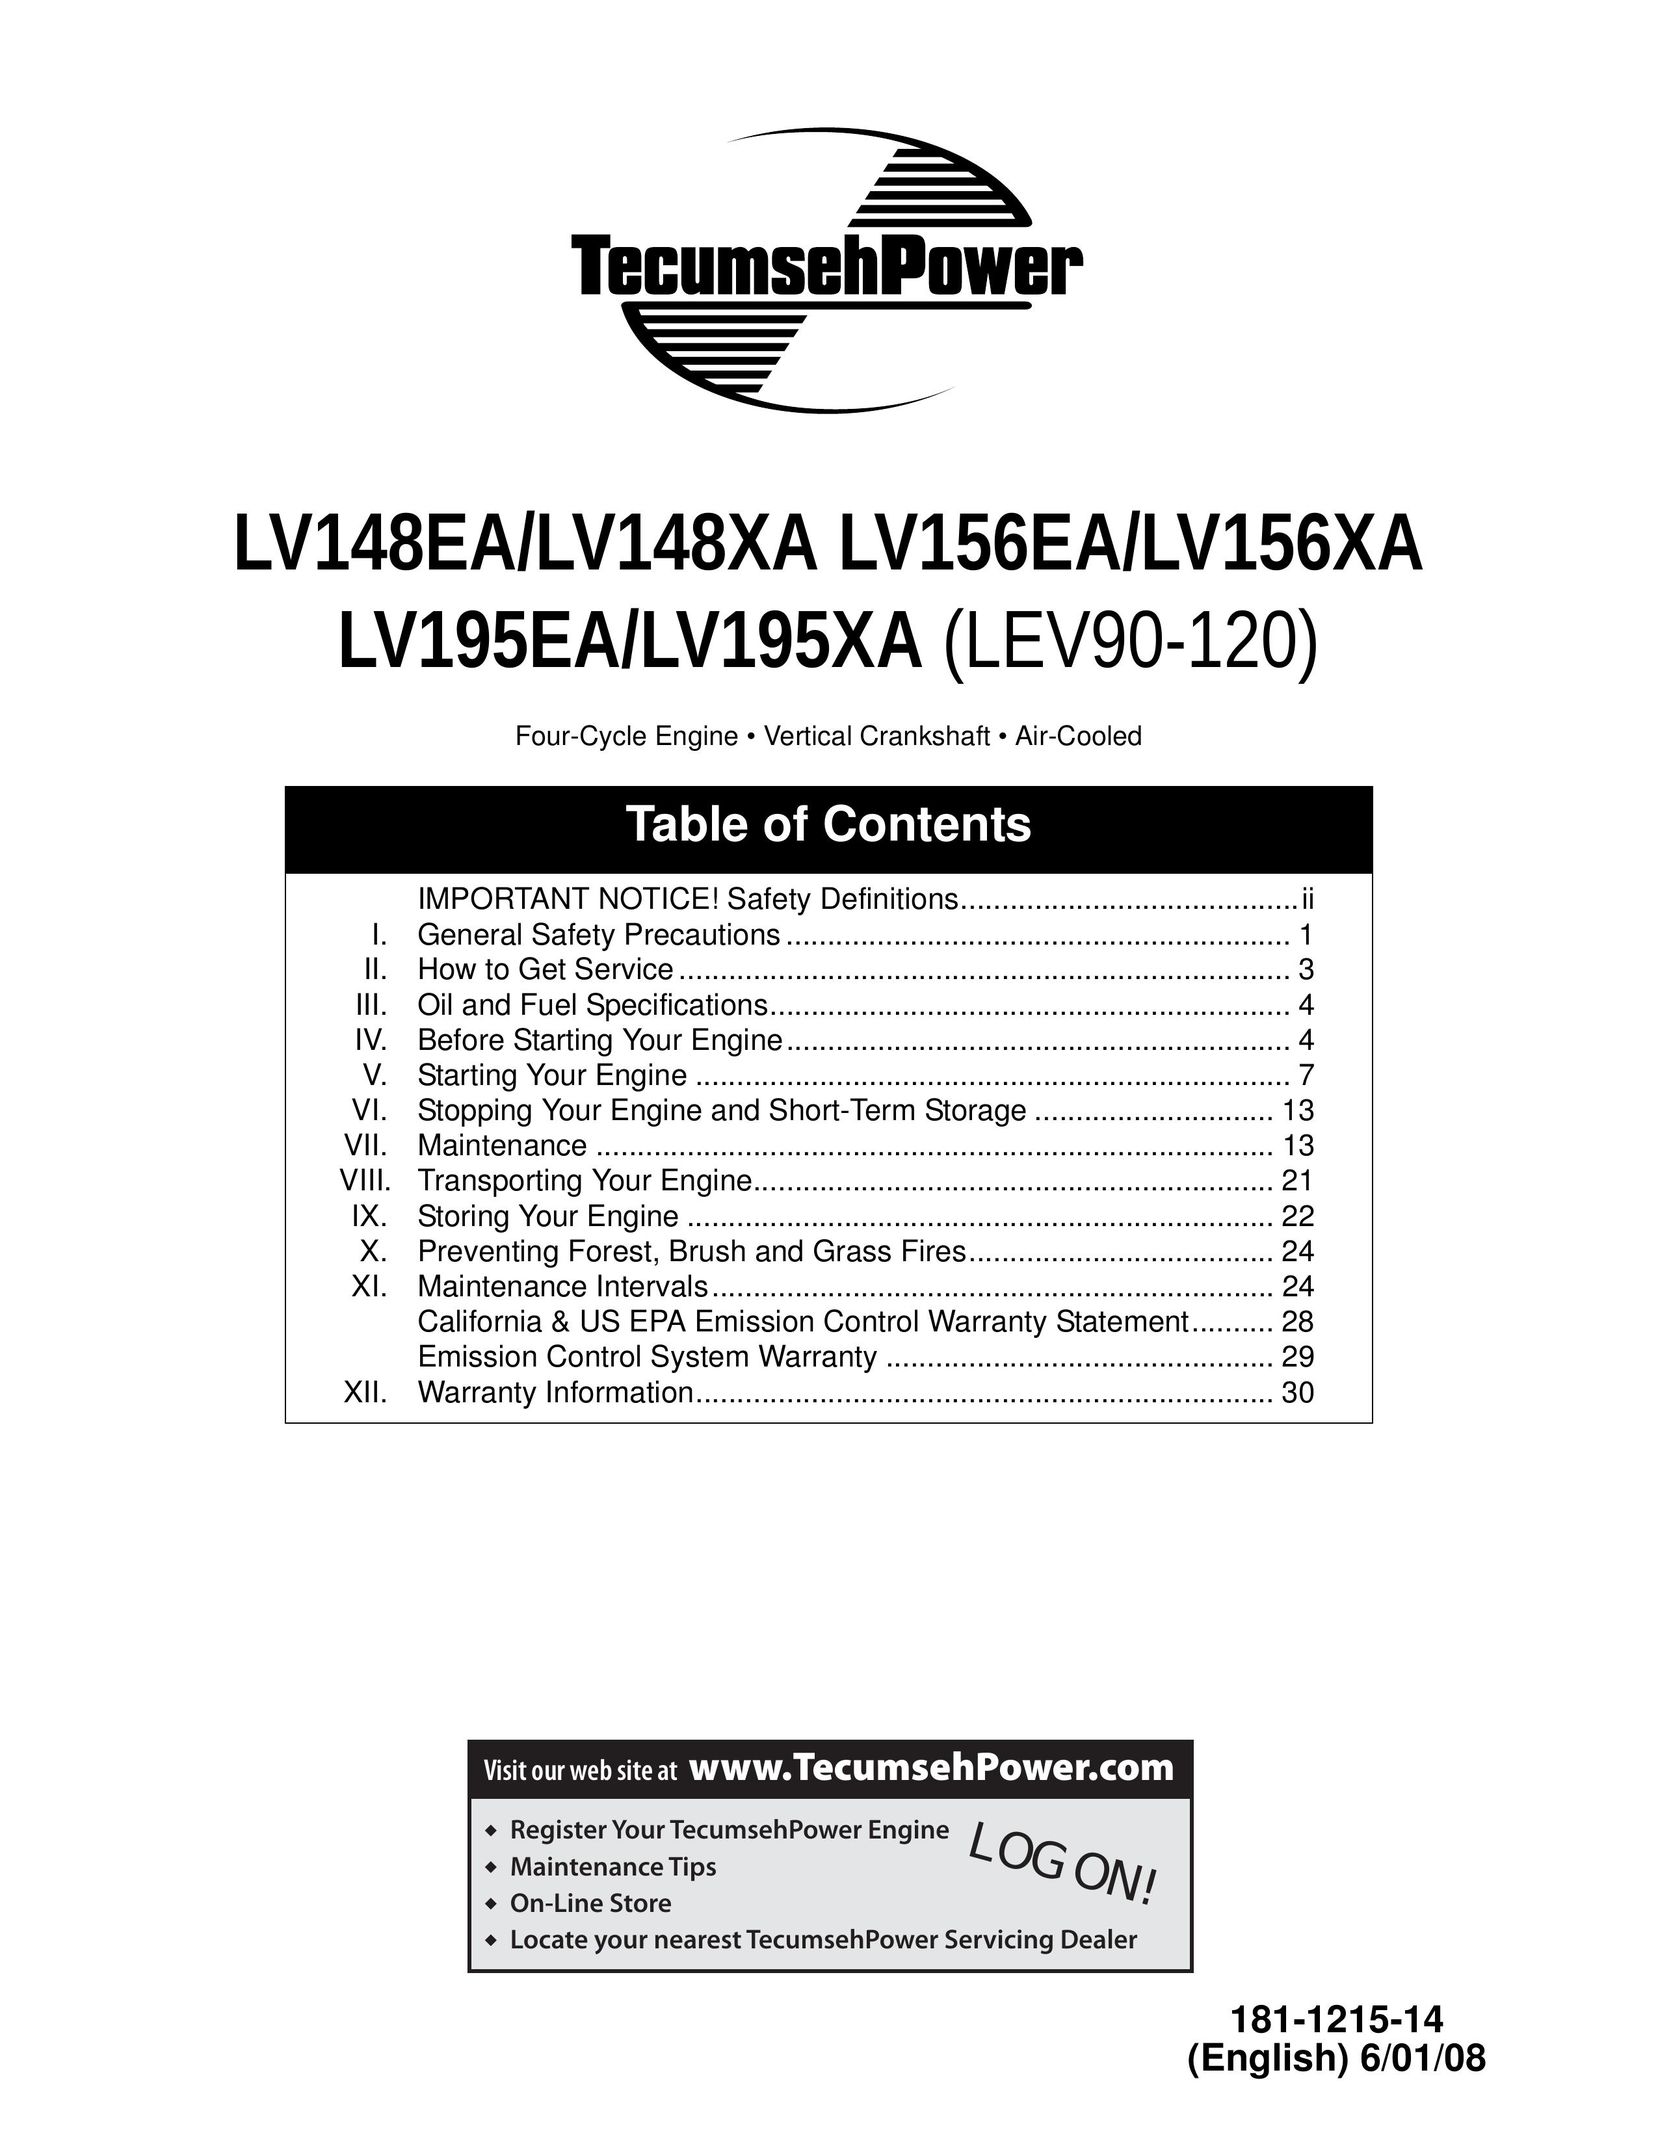 Tecumseh LV156EA Fan User Manual